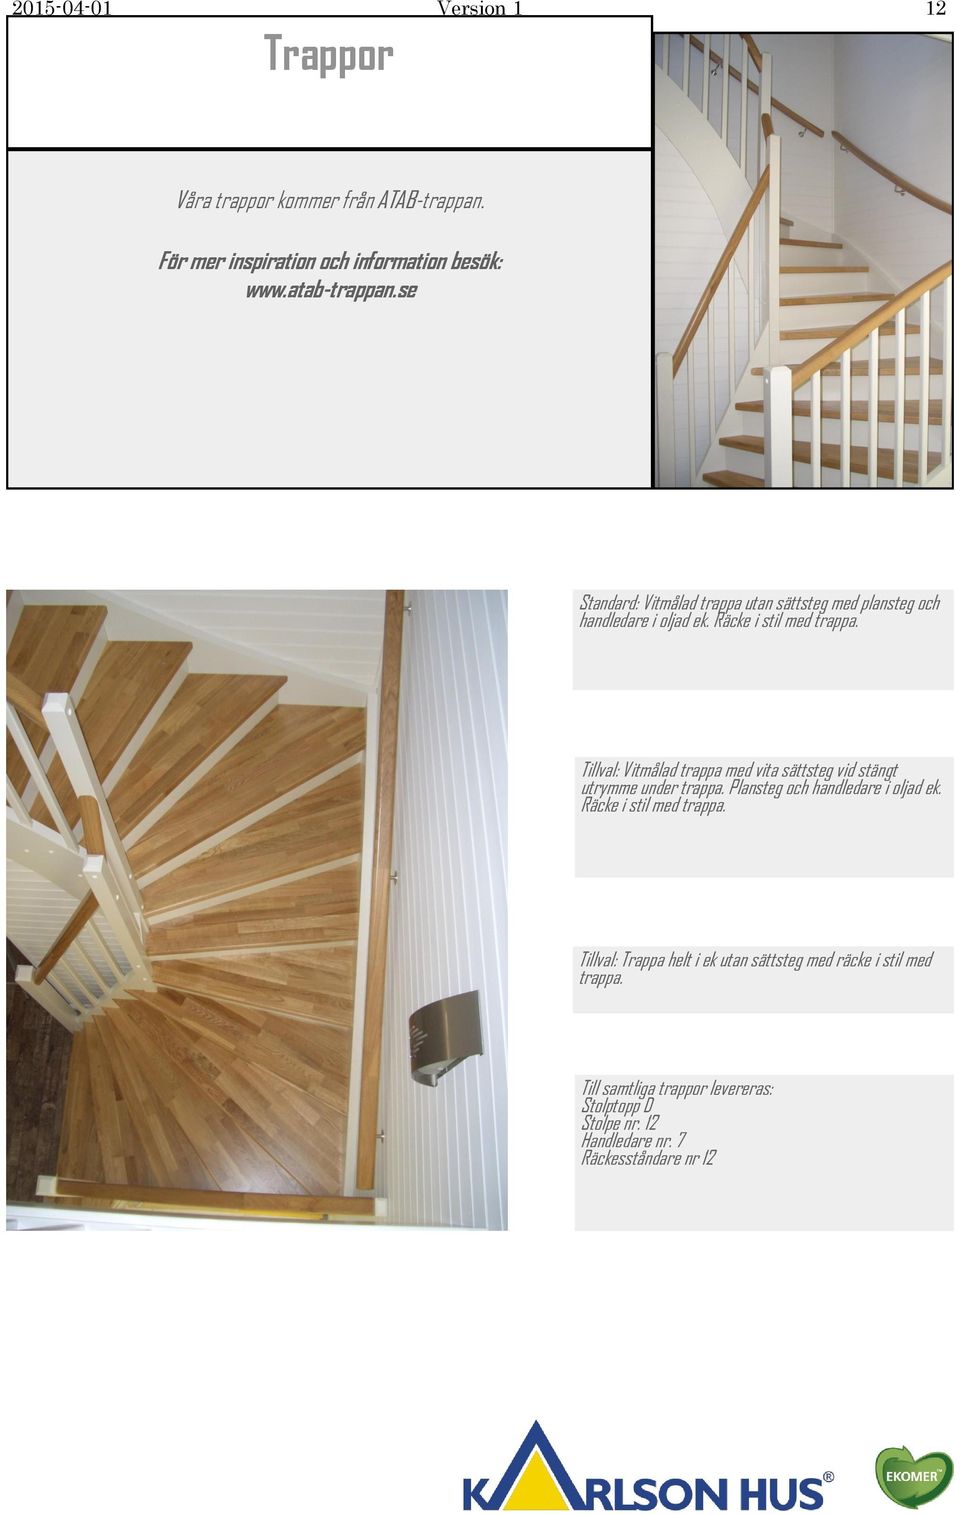 Tillval: Vitmålad trappa med vita sättsteg vid stängt utrymme under trappa. Plansteg och handledare i oljad ek. Räcke i stil med trappa.